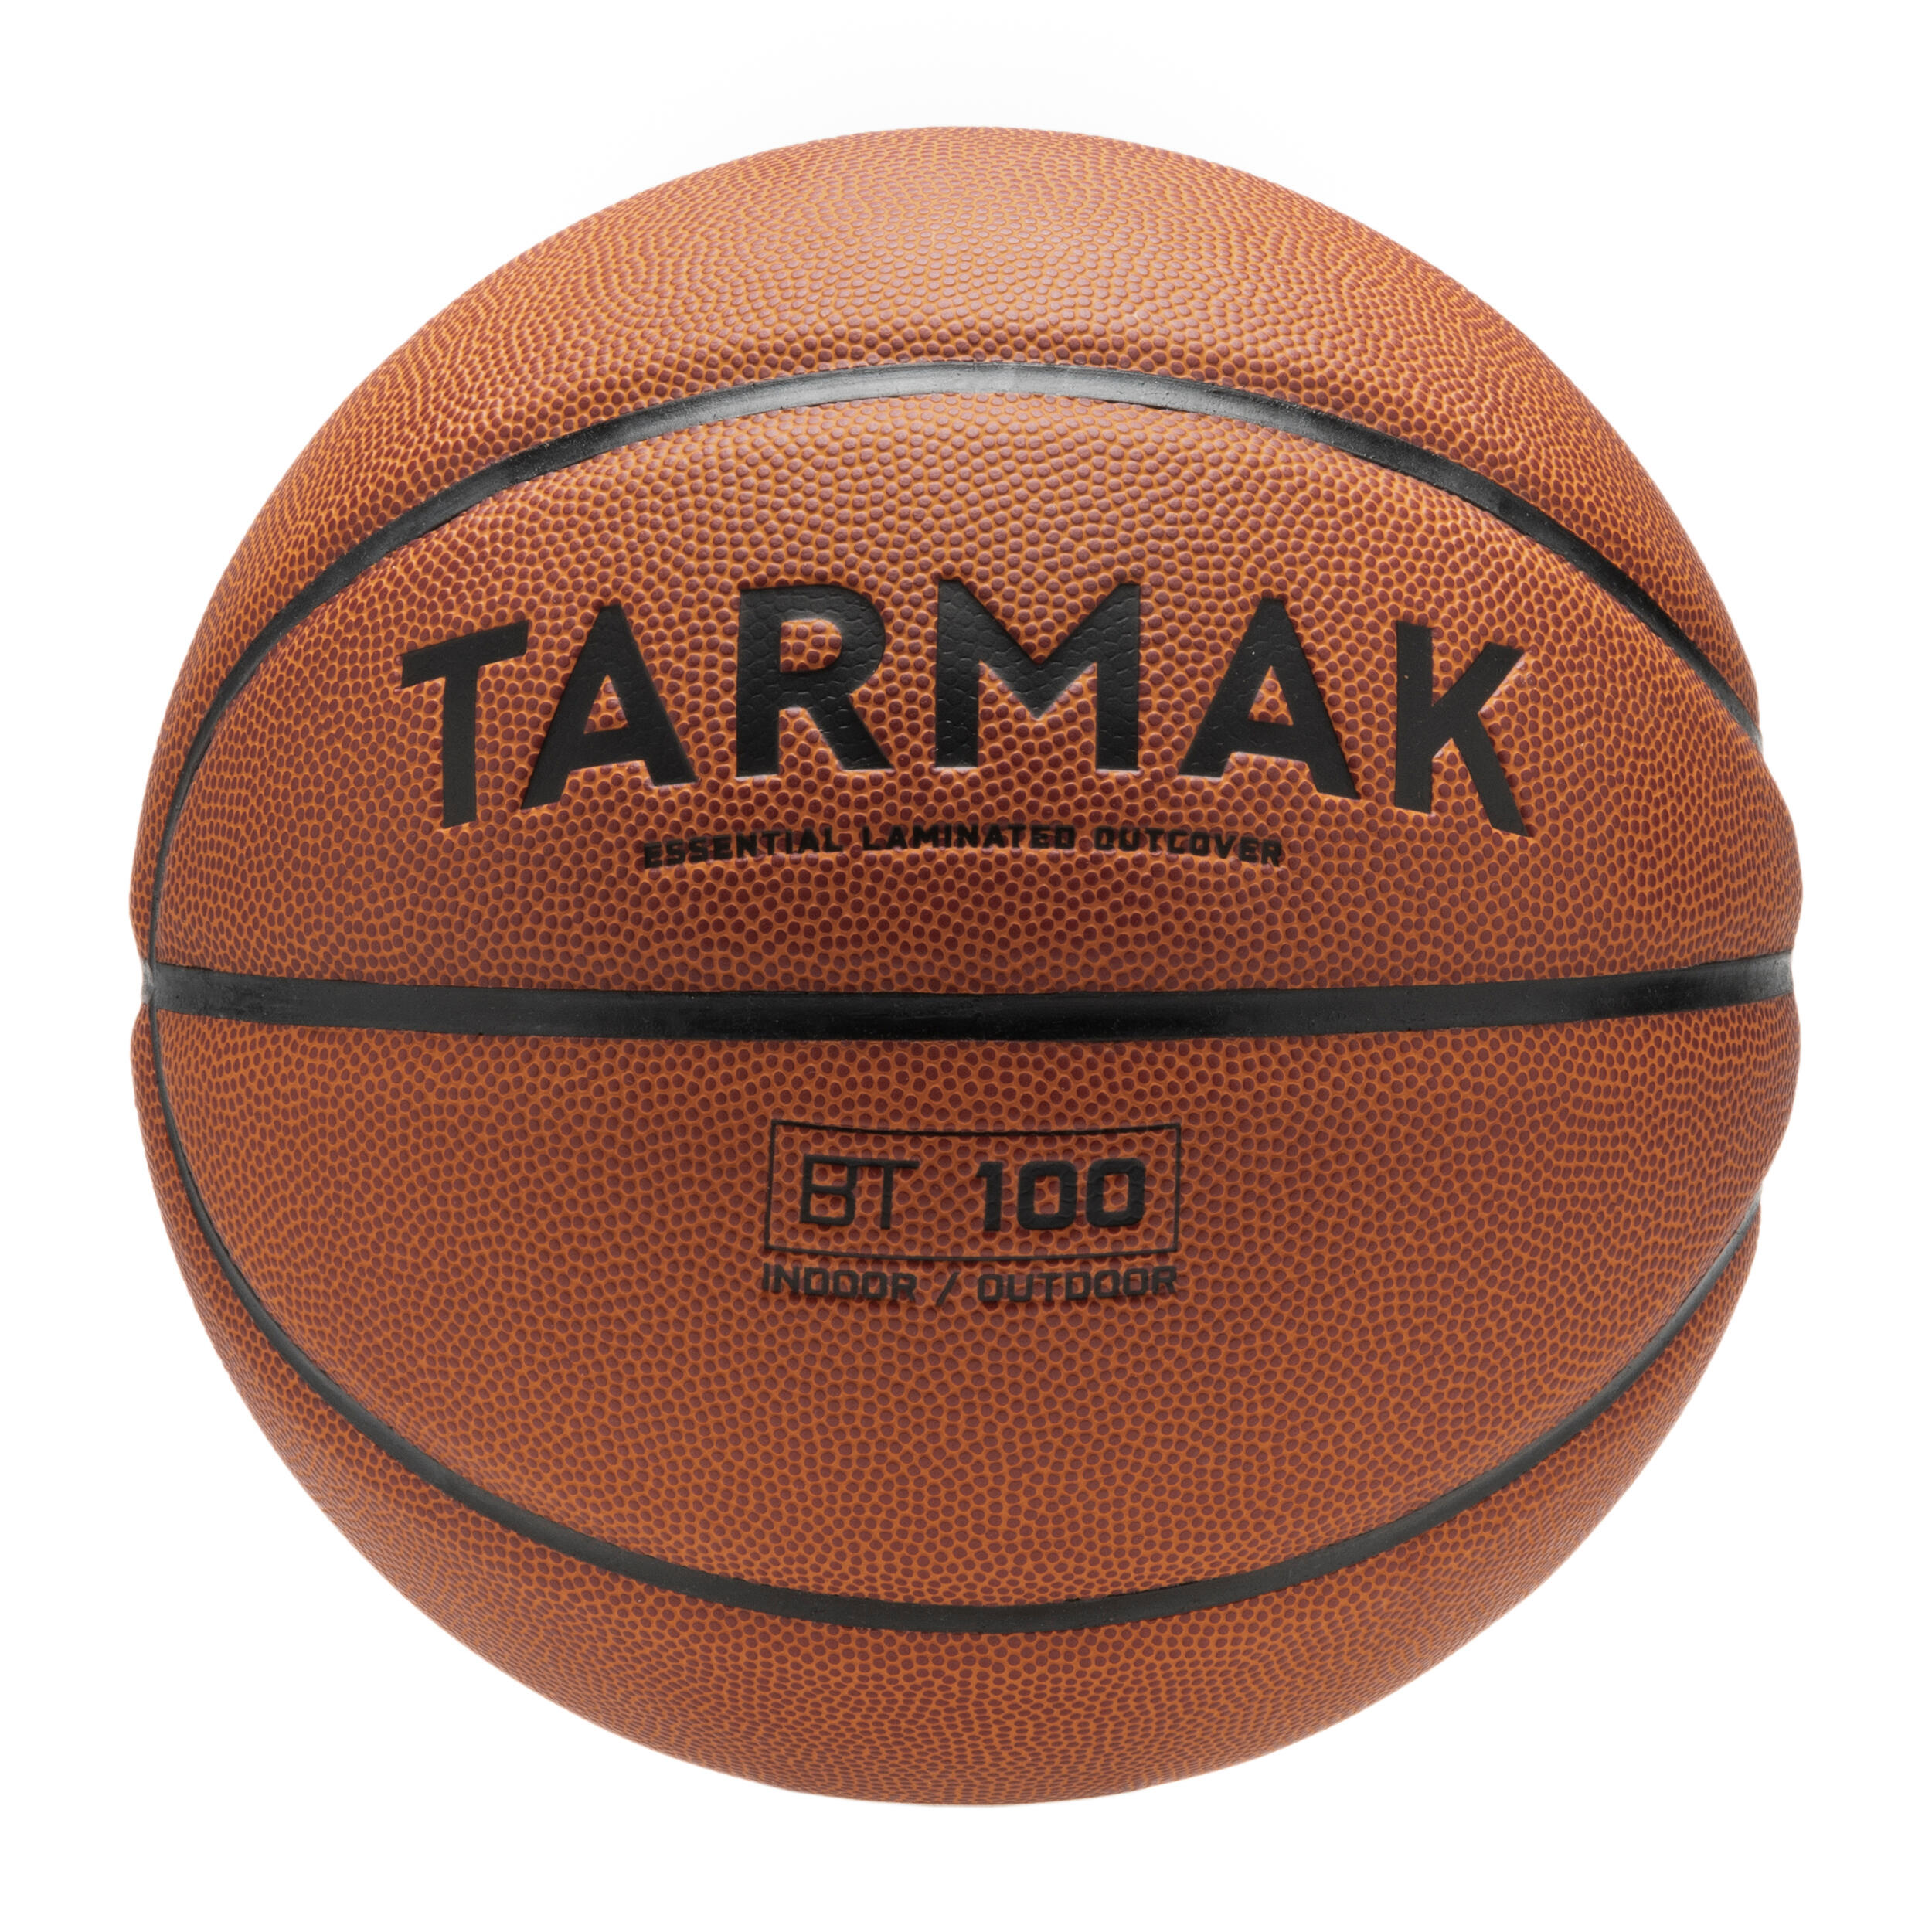 Оранжевый баскетбольный мяч BT100 размера 5 для детей до 10 лет, для начала. Tarmak цена и фото